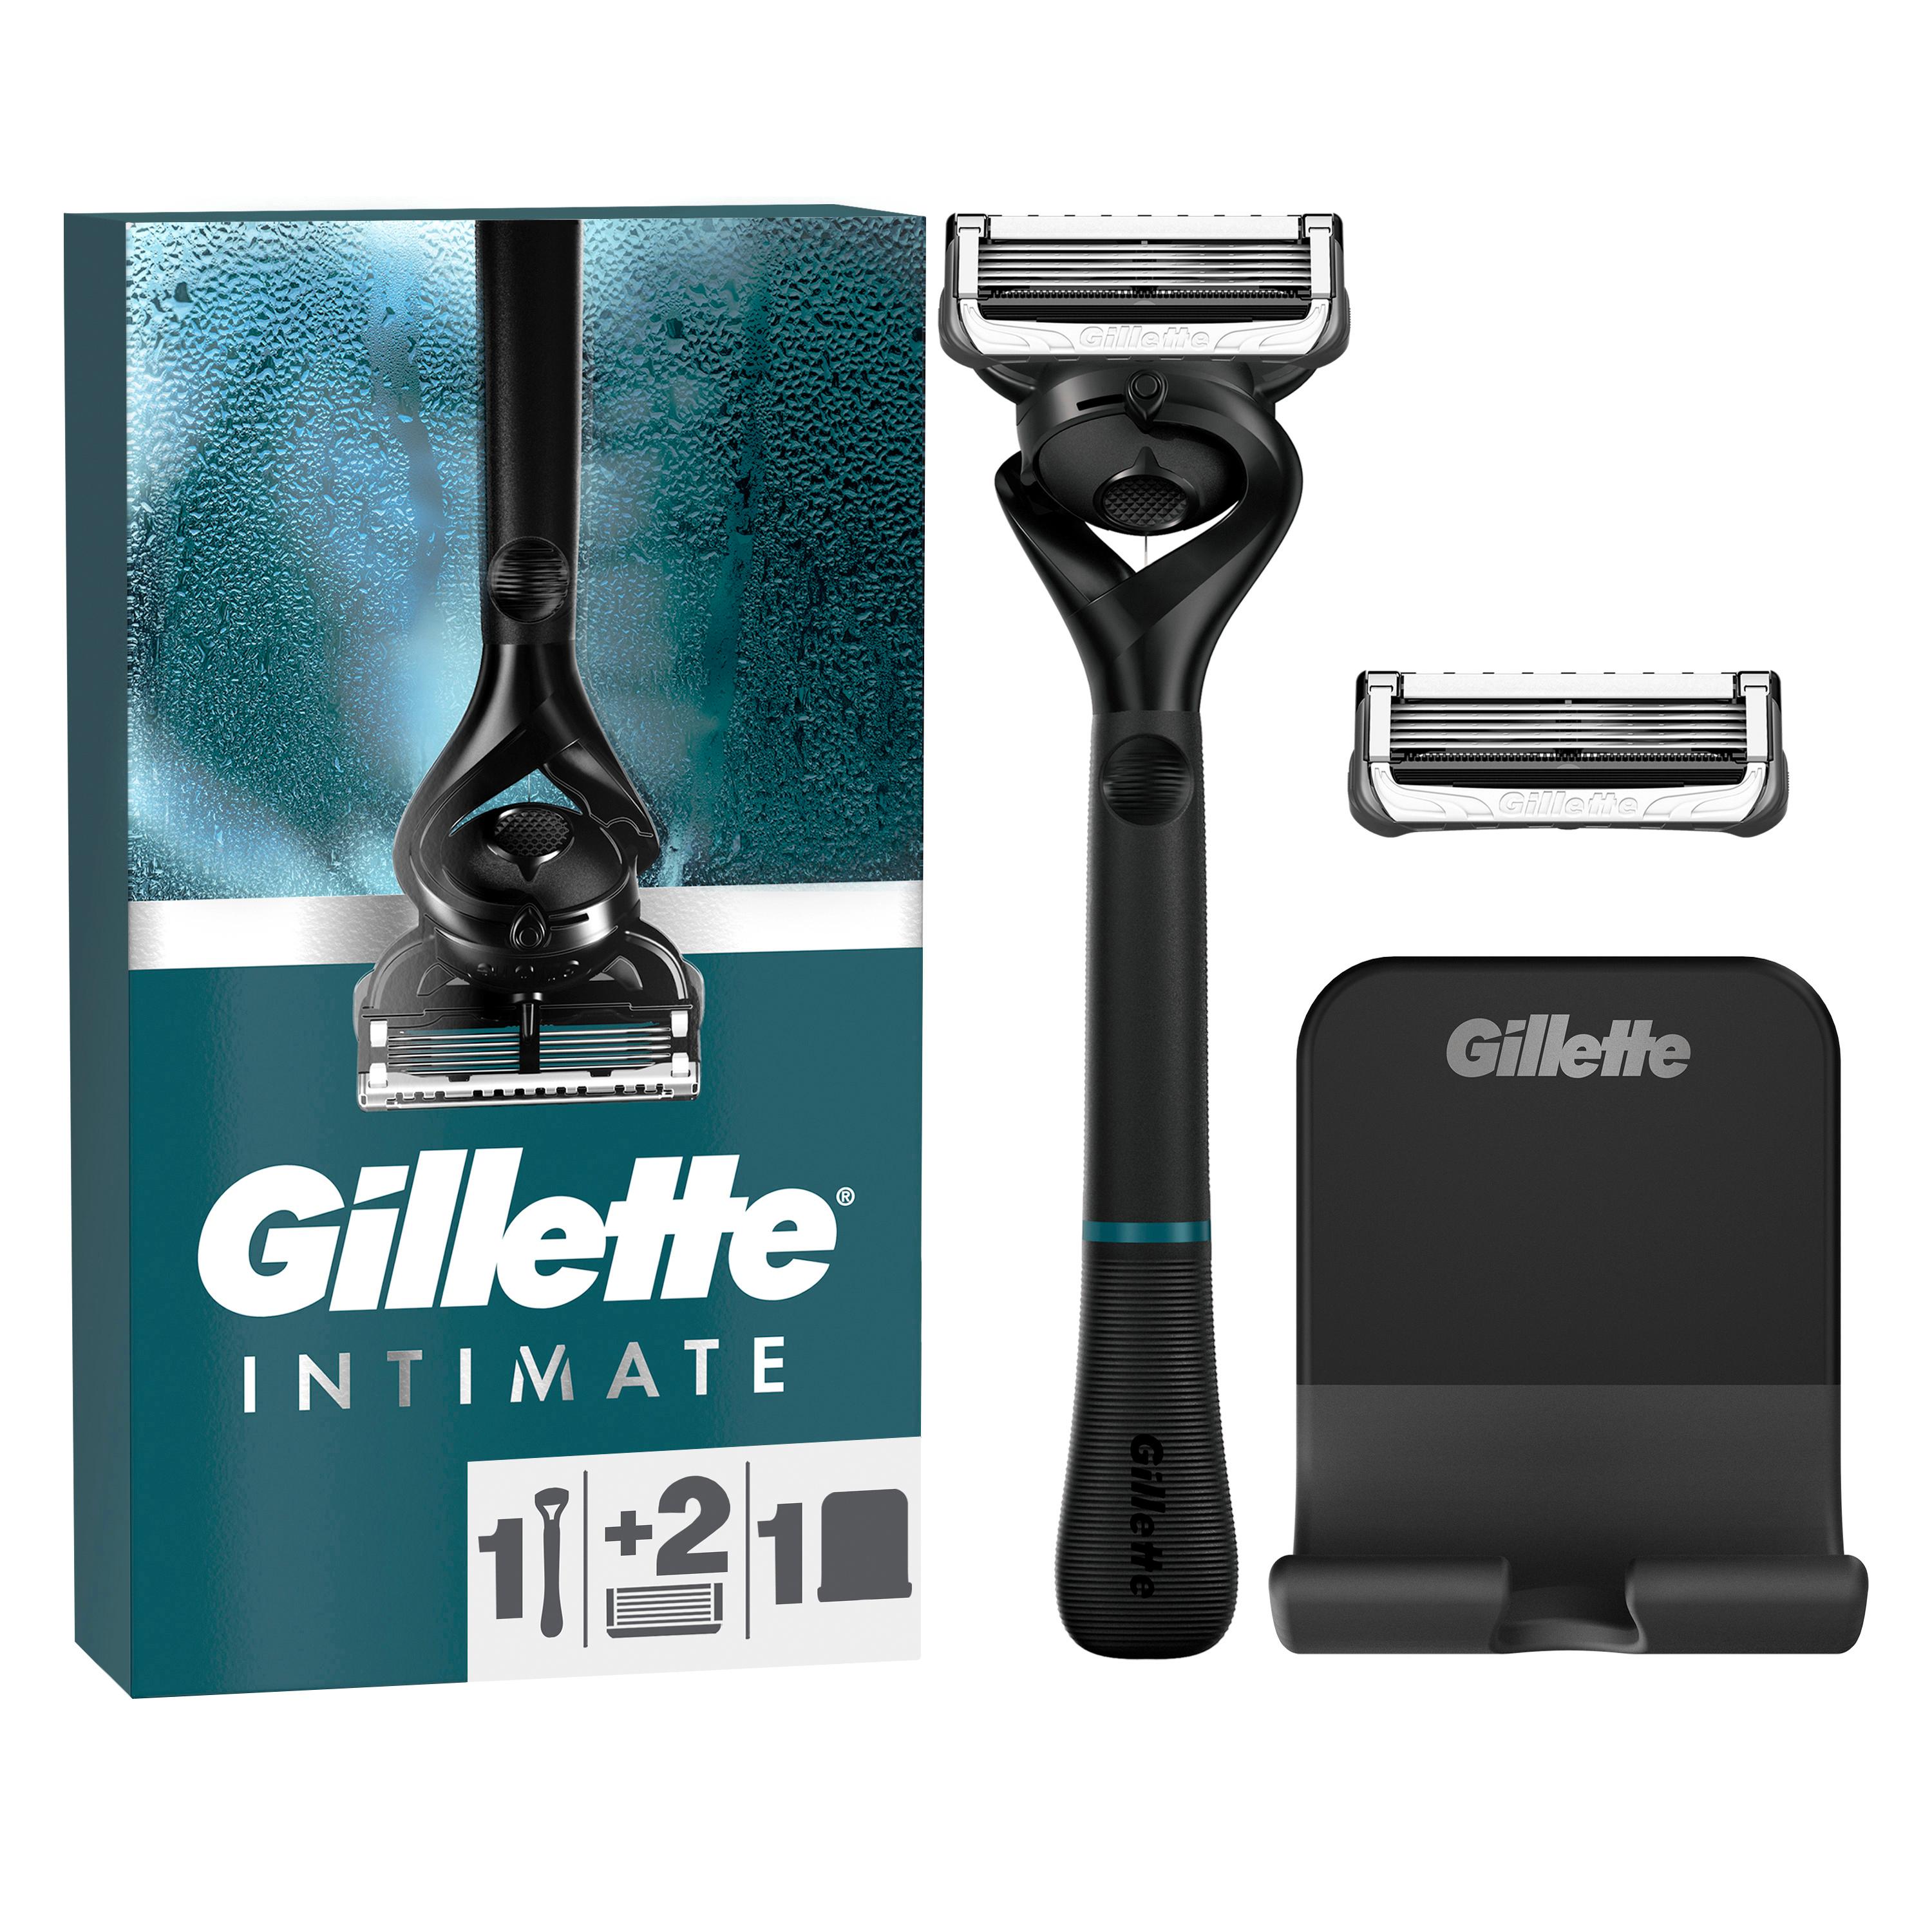 Gillette - Intimate Rasierapparat mit 2 Klingen